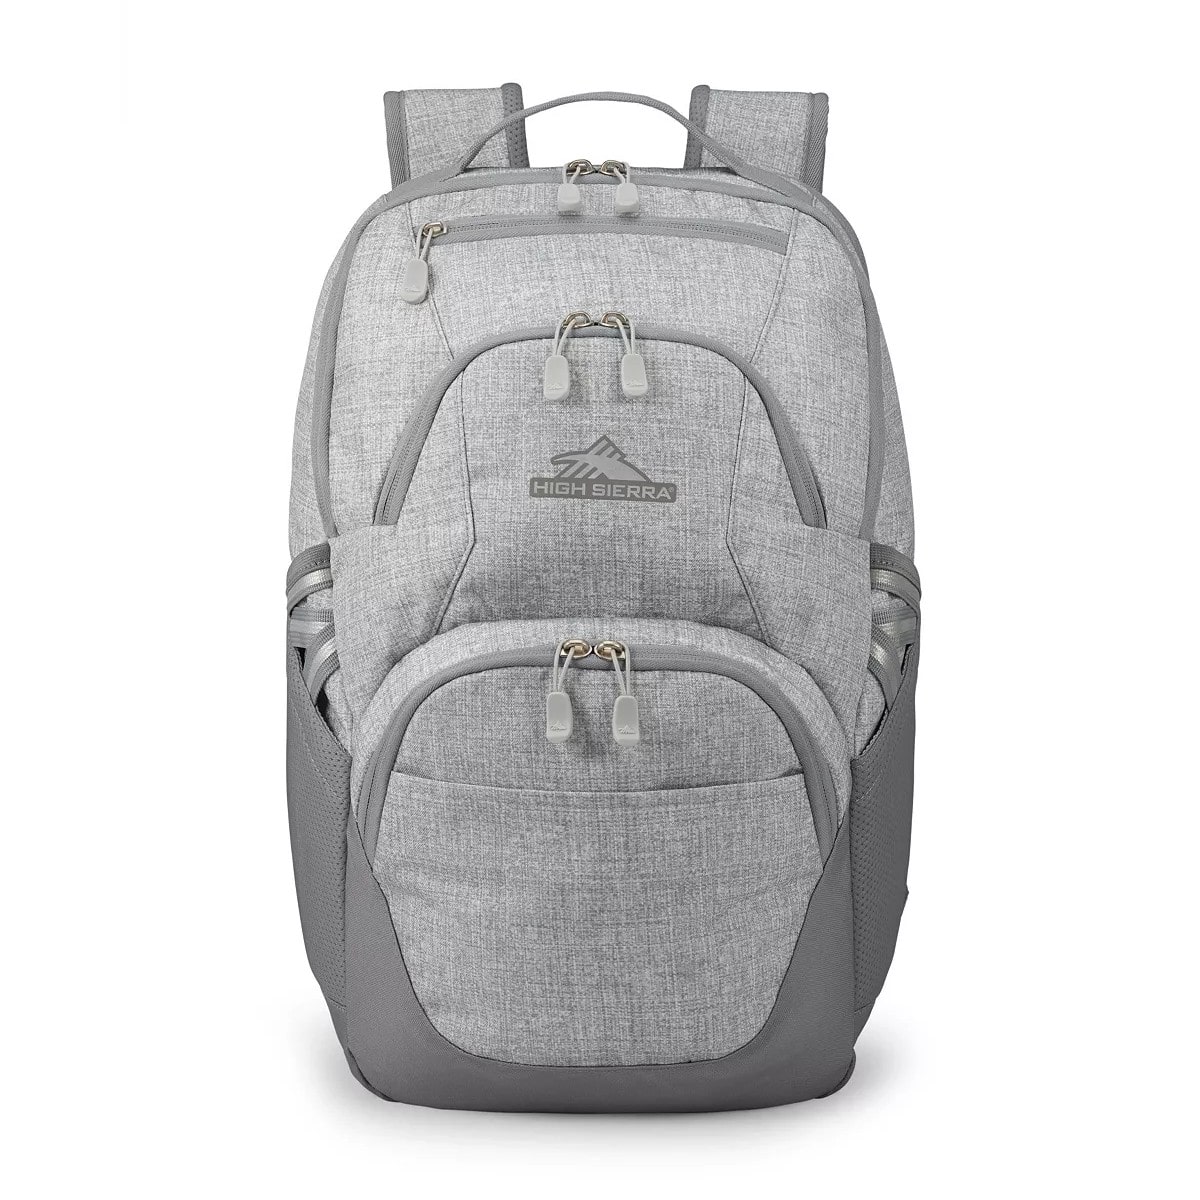 Рюкзак High Sierra Swoop Sg, серый цена и фото